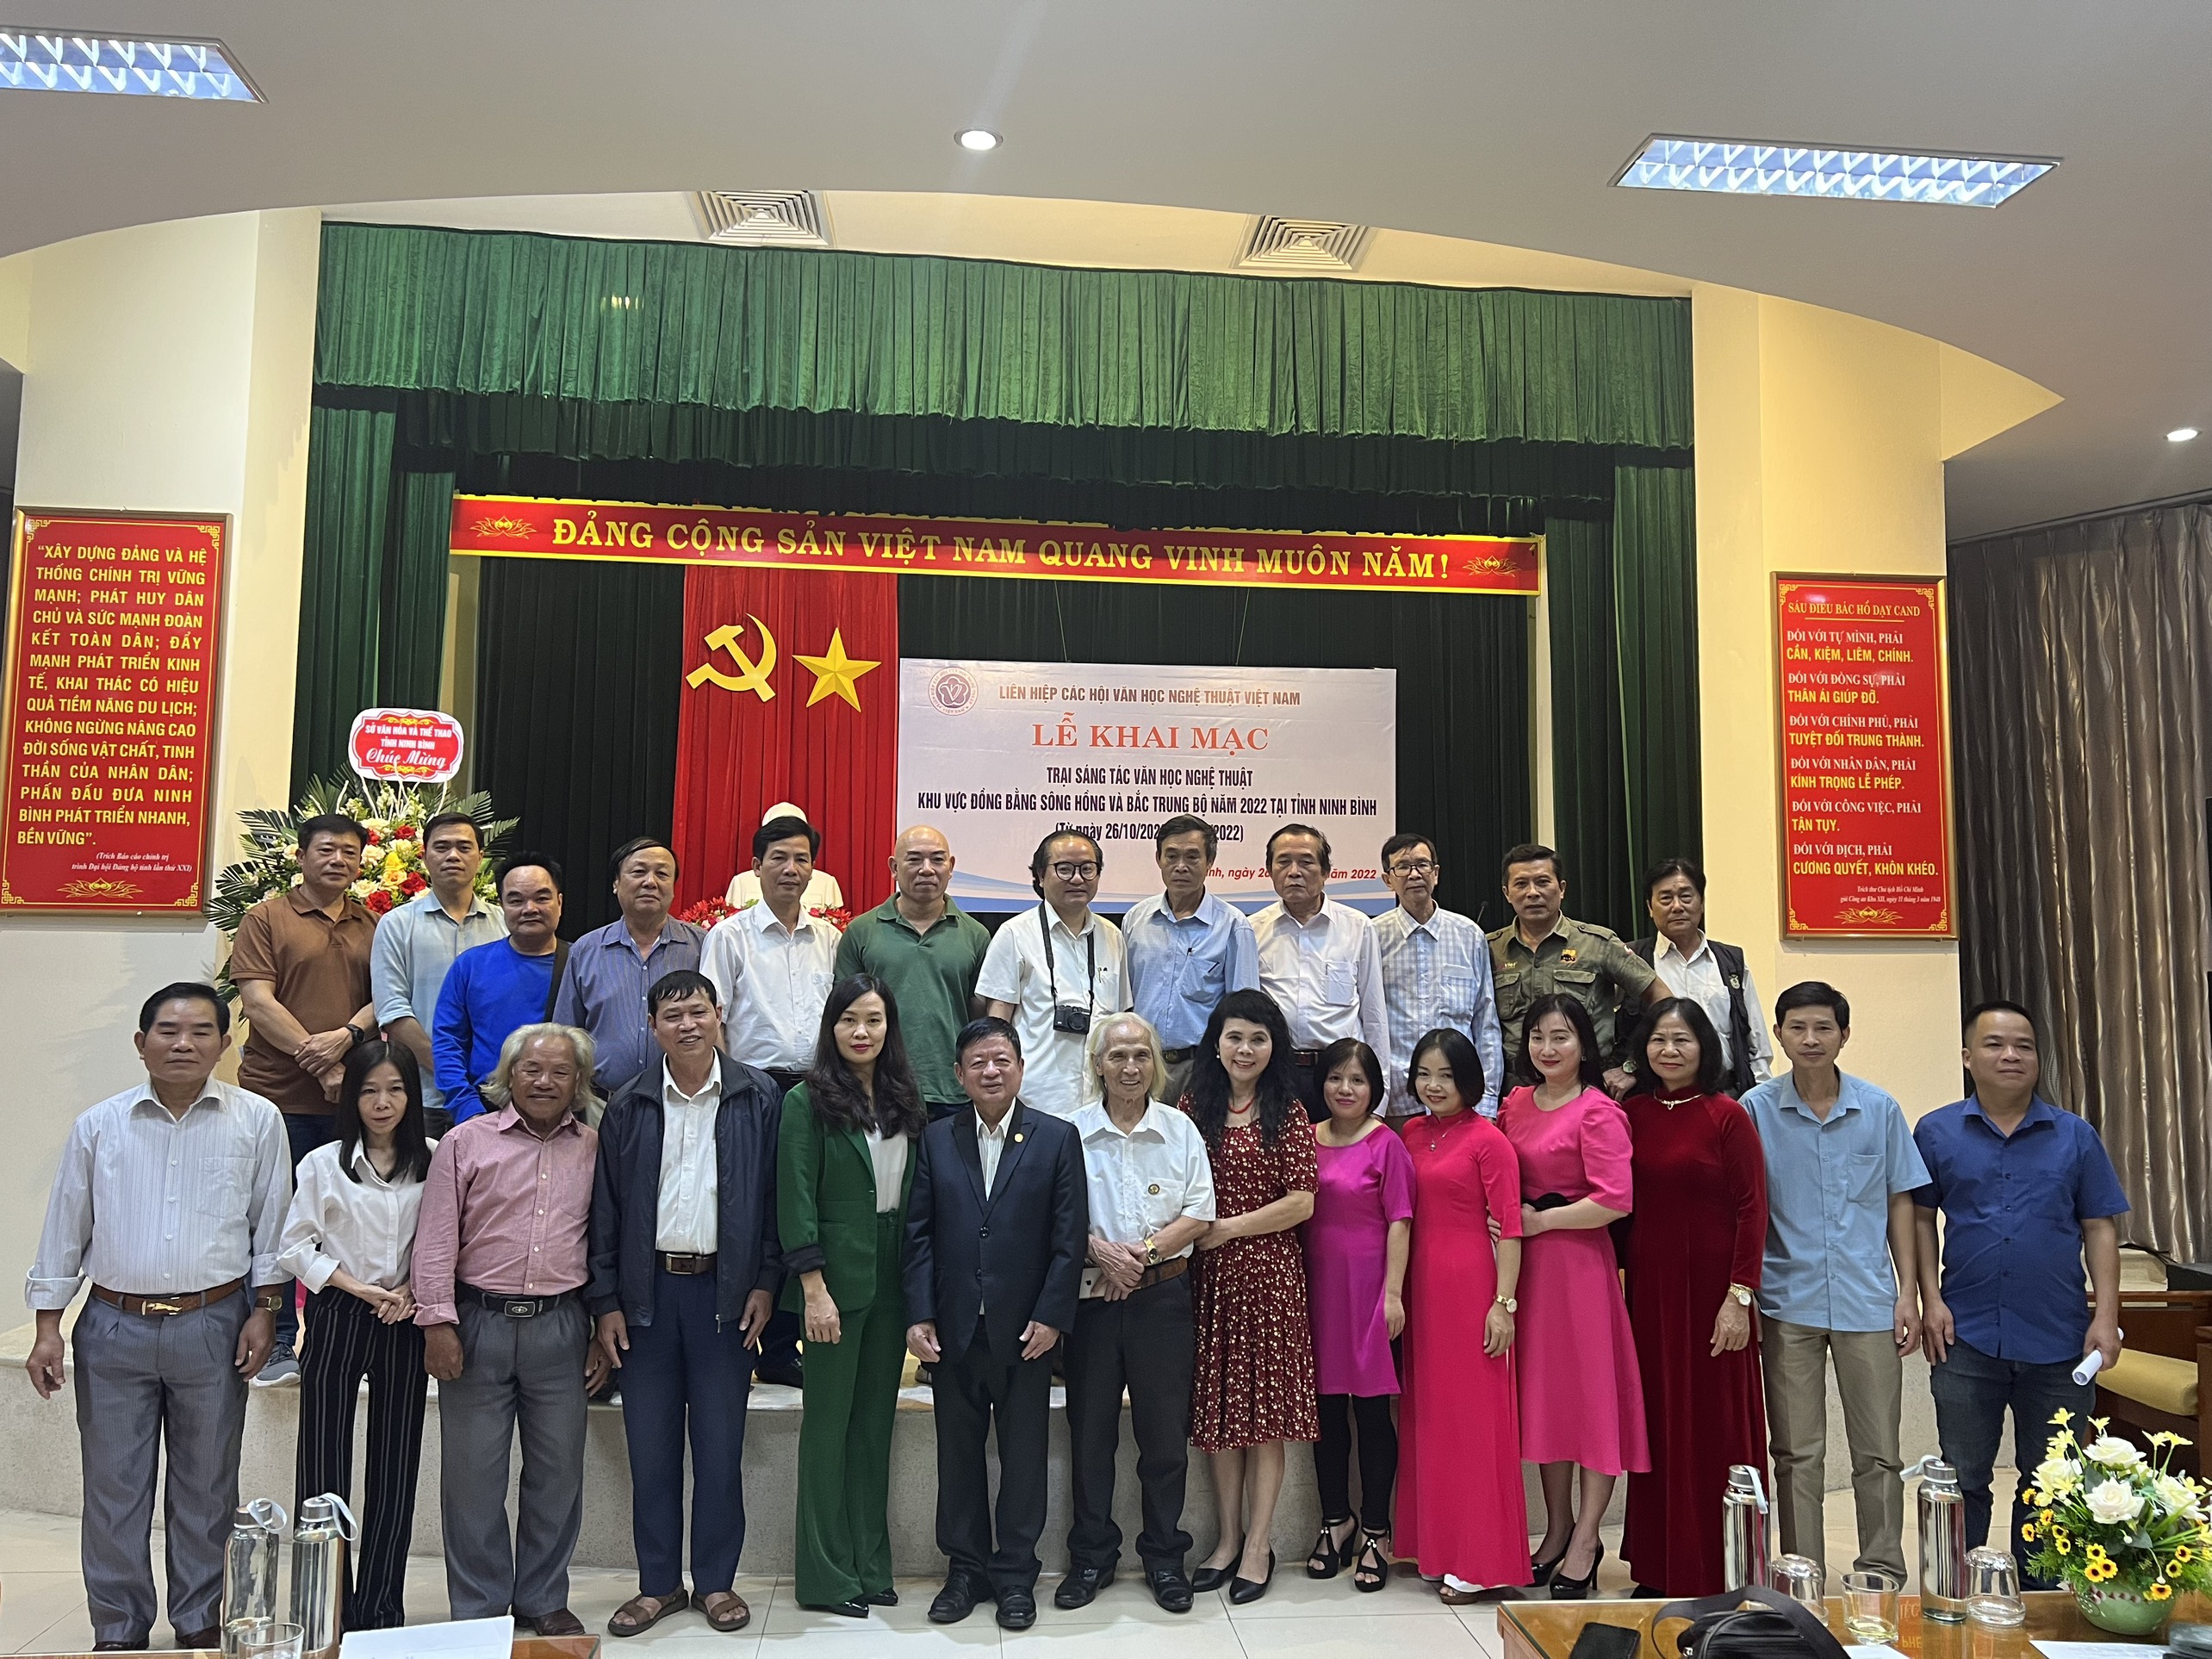 Lễ khai mạc Trại sáng tác tại Ninh Bình của Liên hiệp các Hội Văn học nghệ thuật Việt Nam - 1